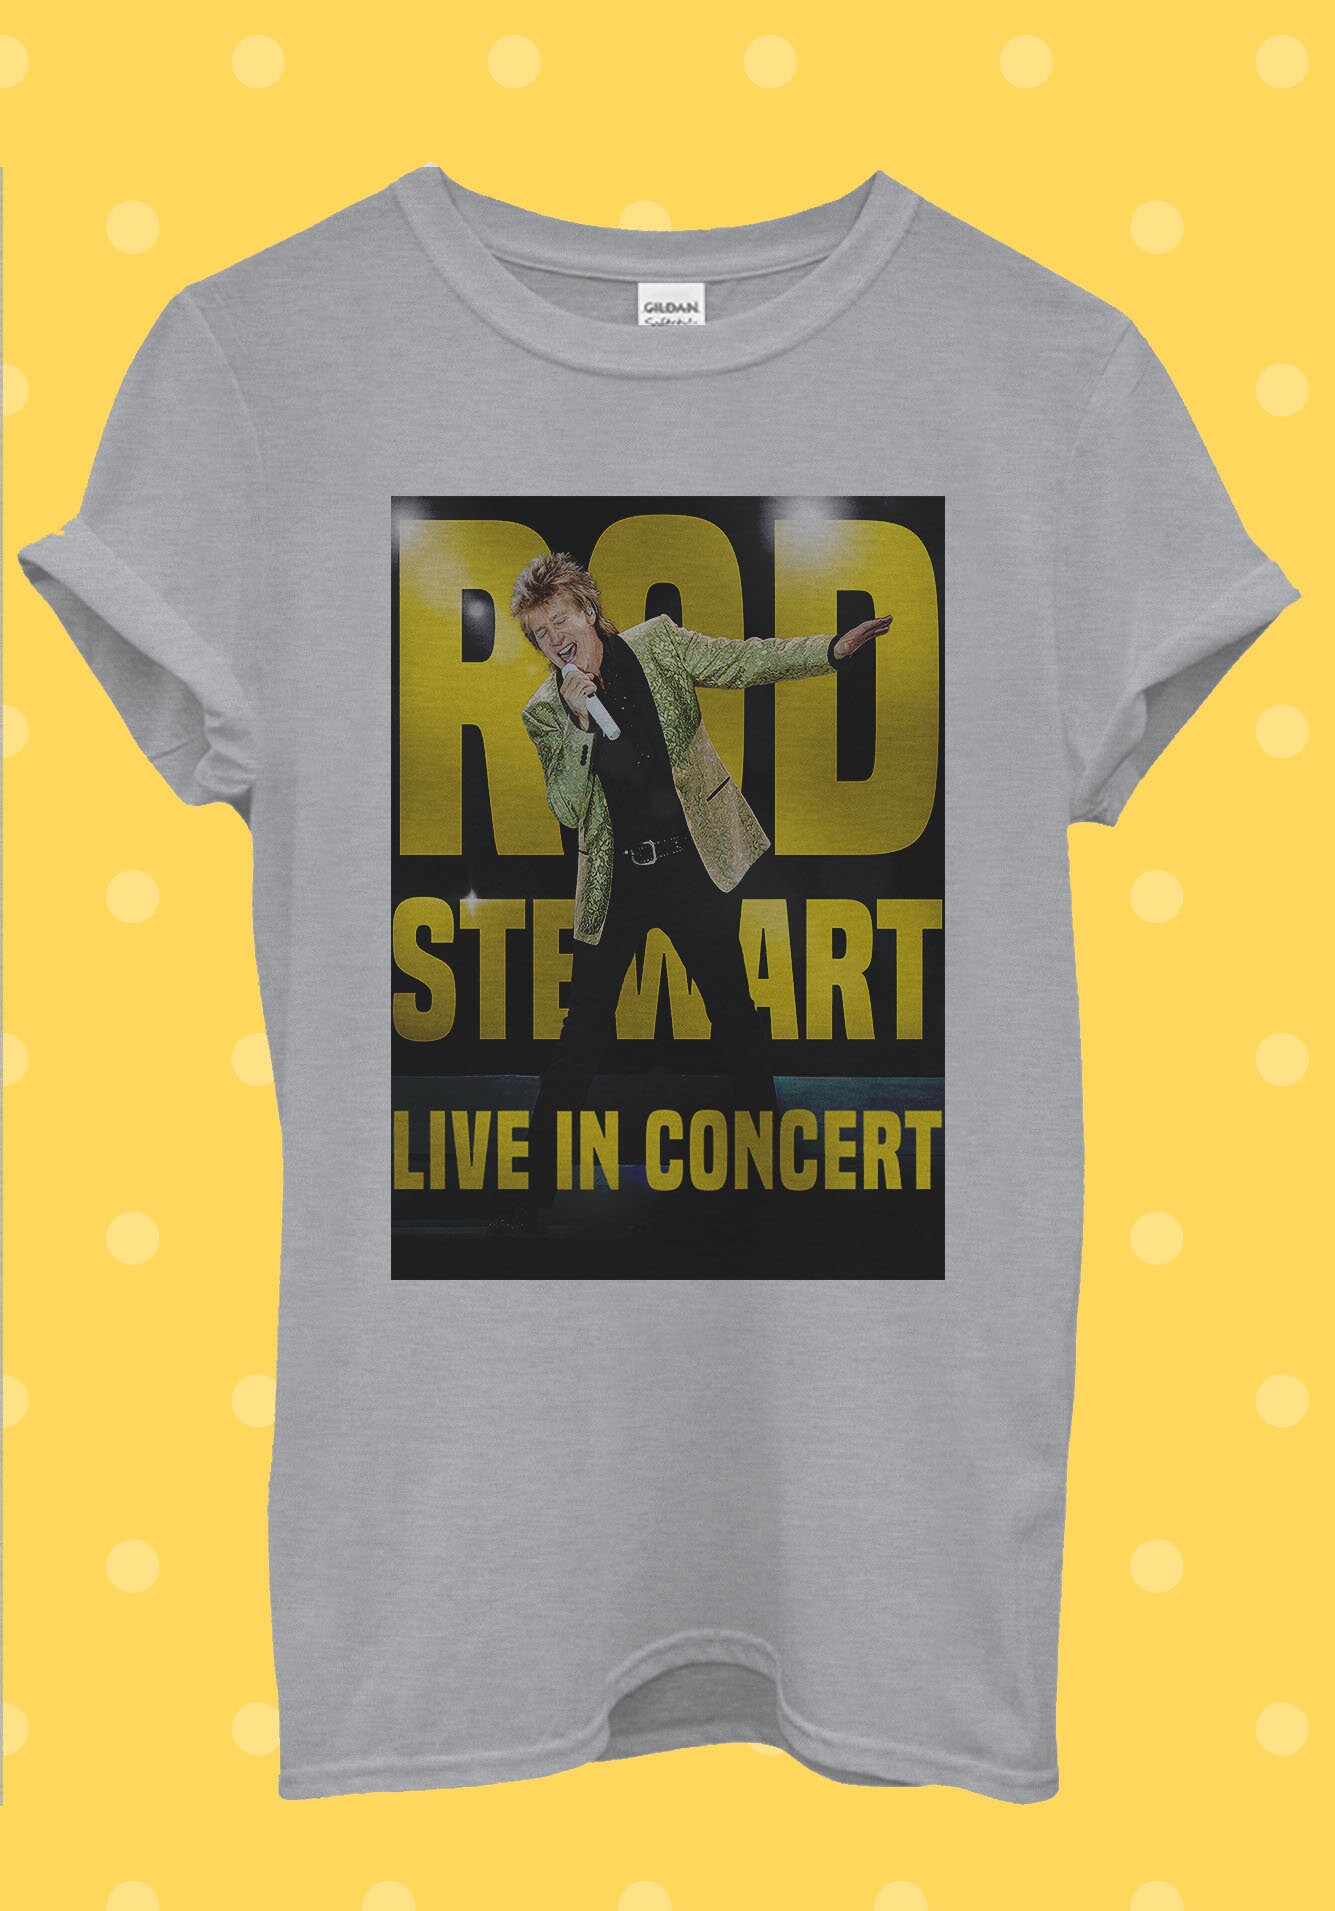 rod stewart uk tour merchandise